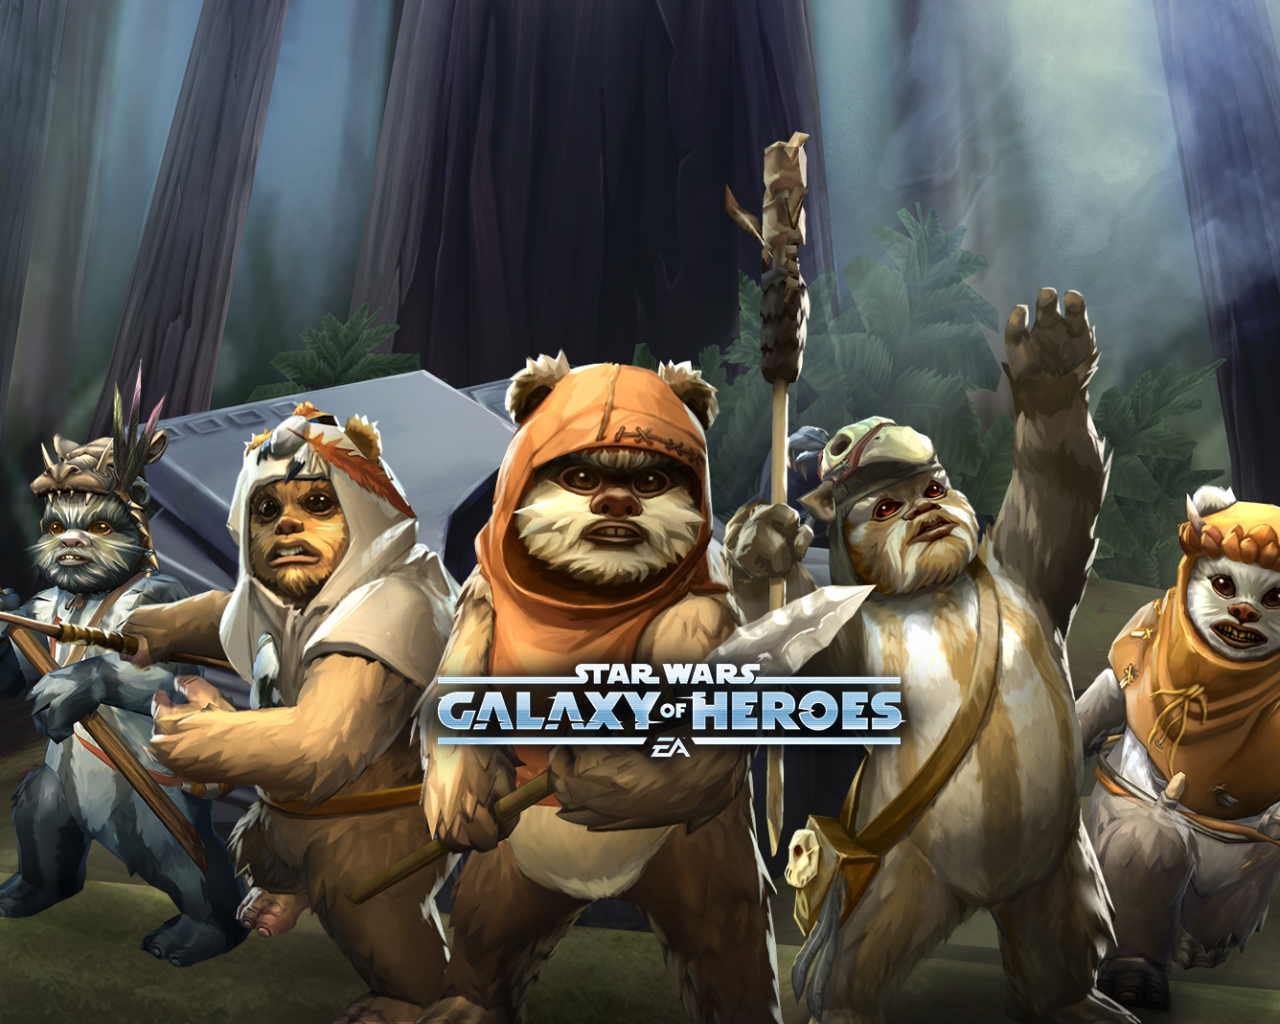 Star Wars Galaxy Of Heroes, Artwork - Ewoks In Video Games - HD Wallpaper 